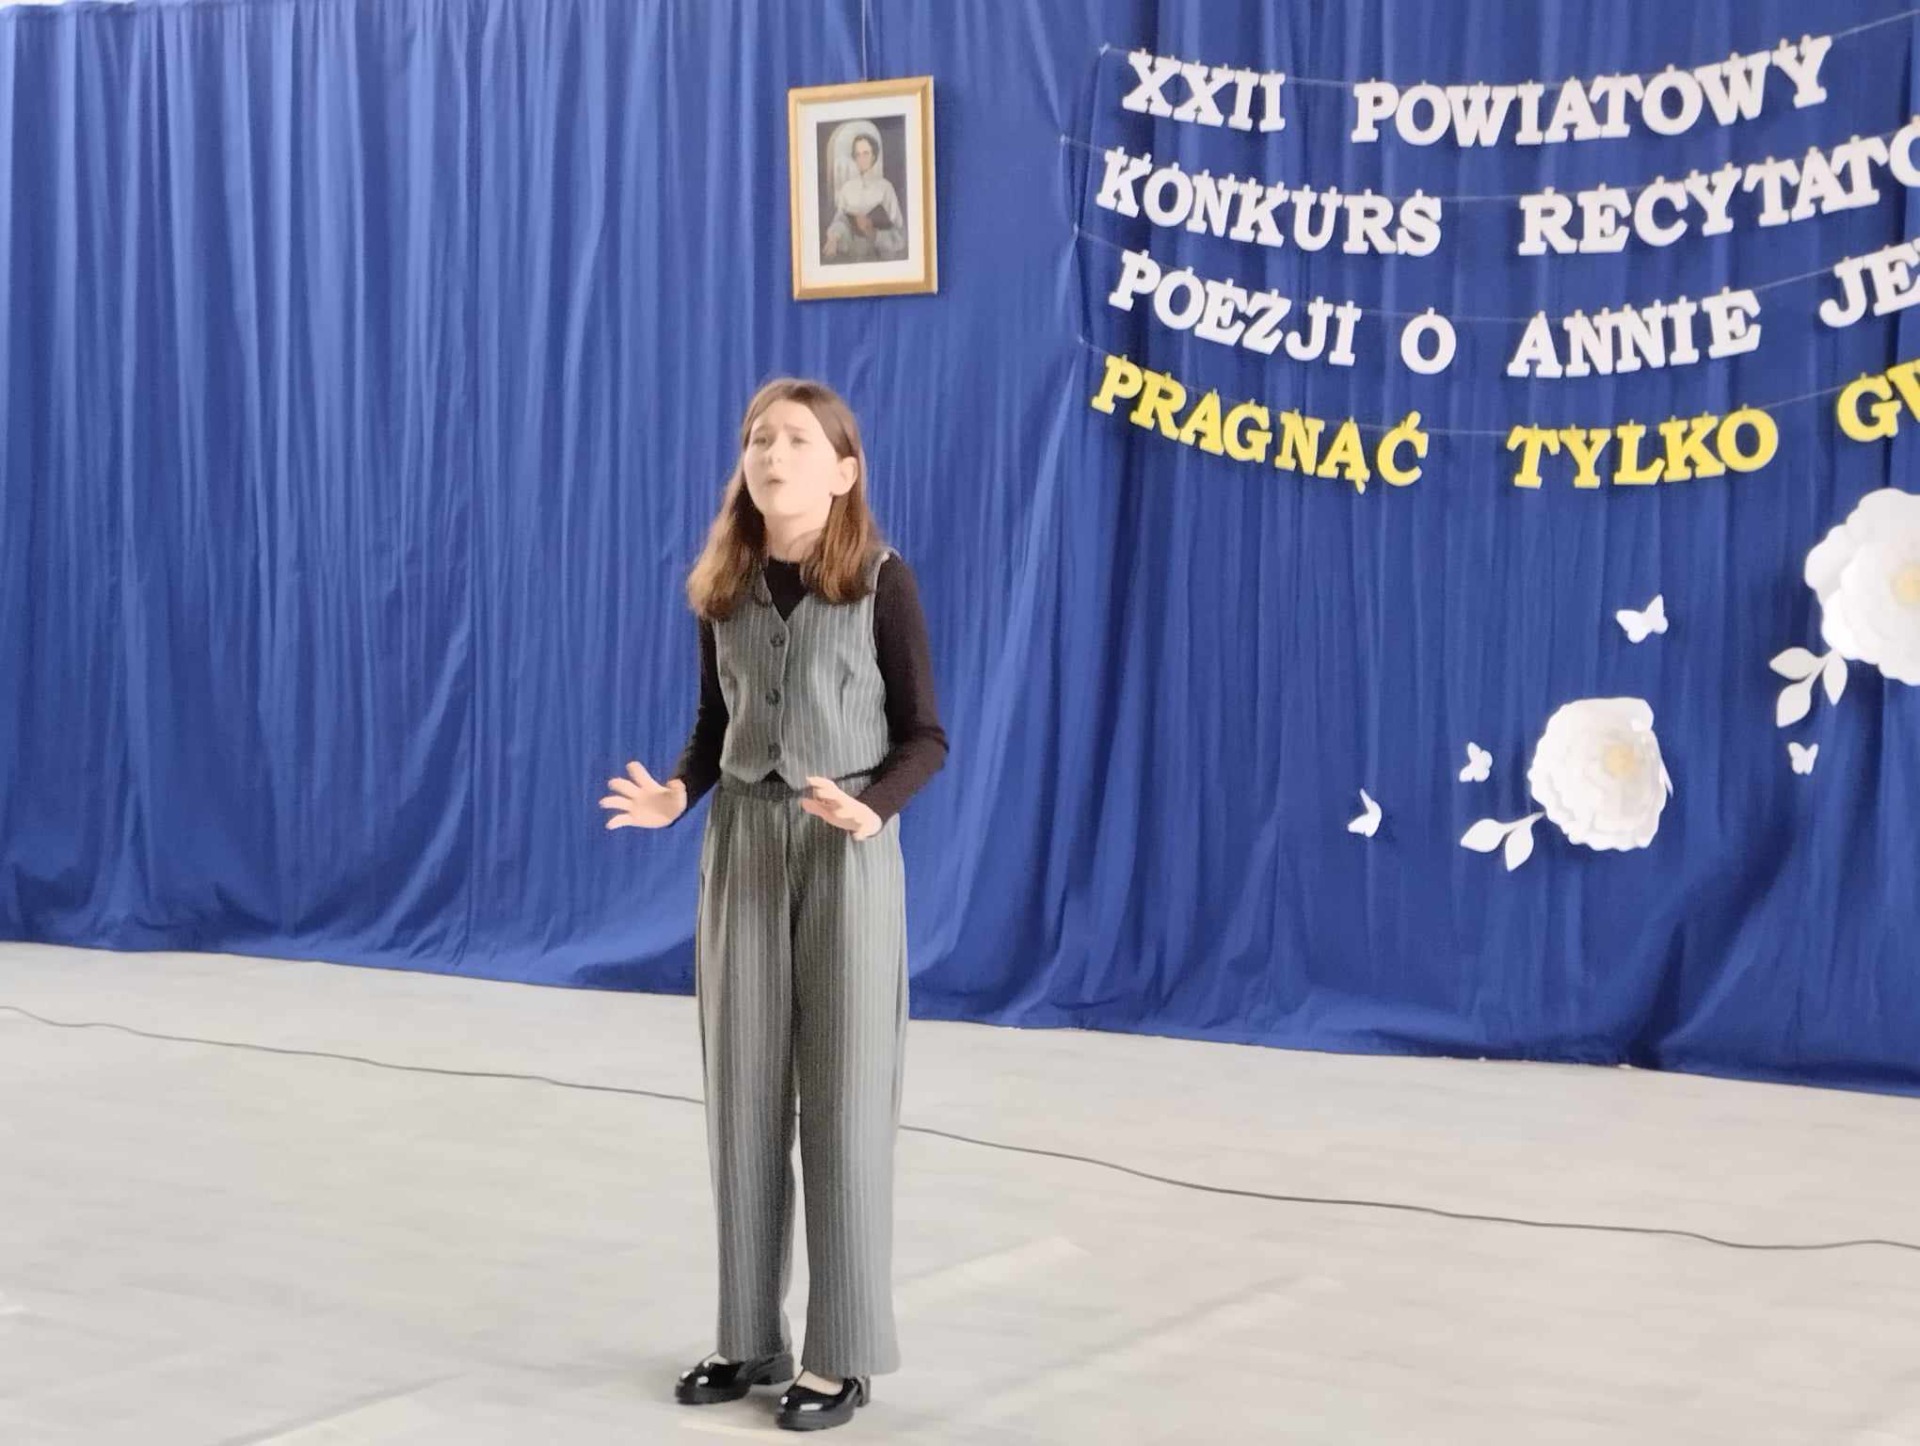 XXII Powiatowy Konkurs Recytatorski Poezji o Annie Jenke - Obrazek 2